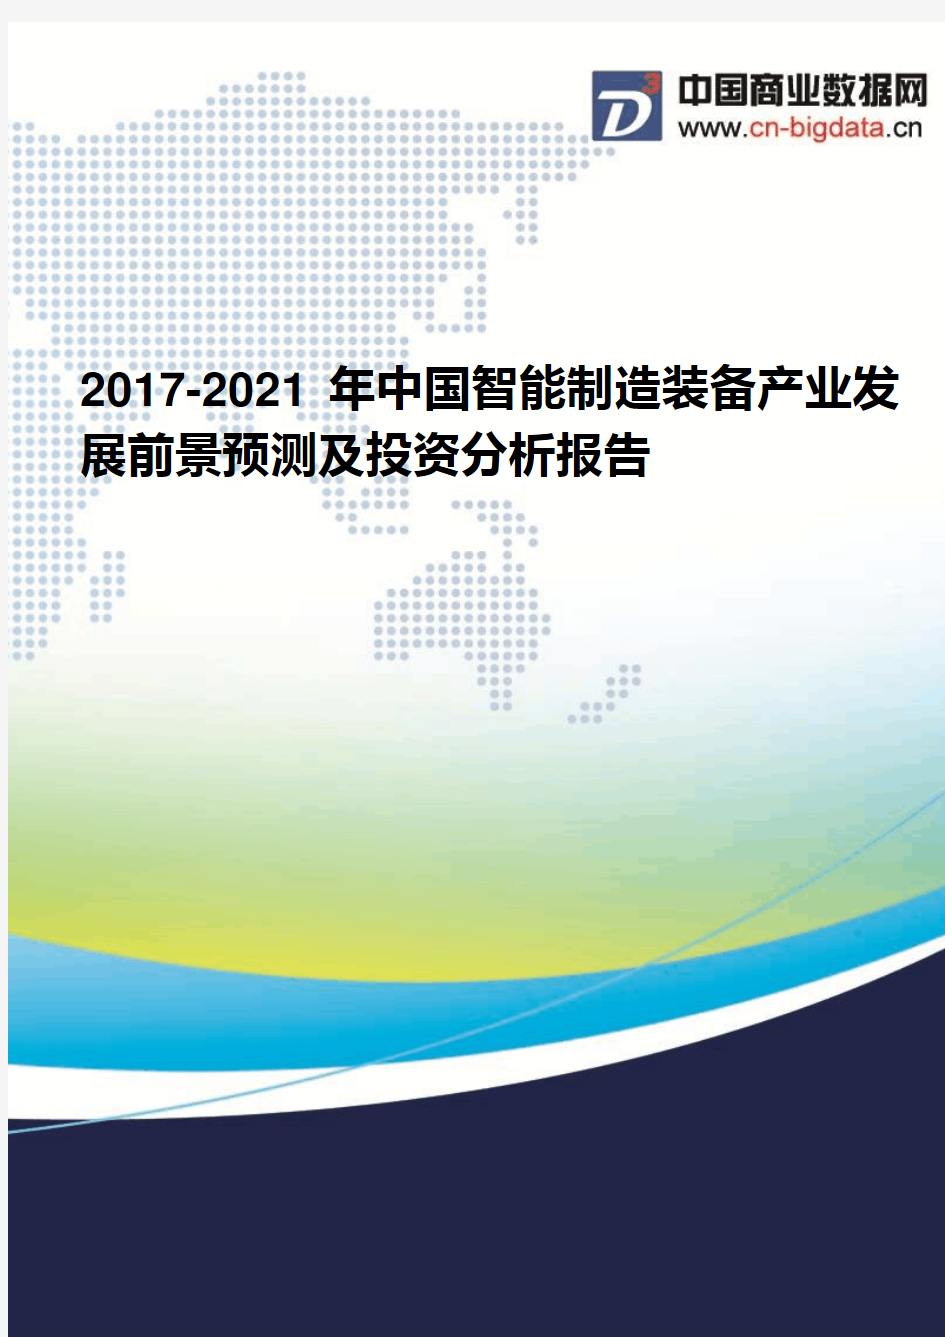 2017-2021年中国智能制造装备产业发展前景预测及投资分析报告(2017版目录)